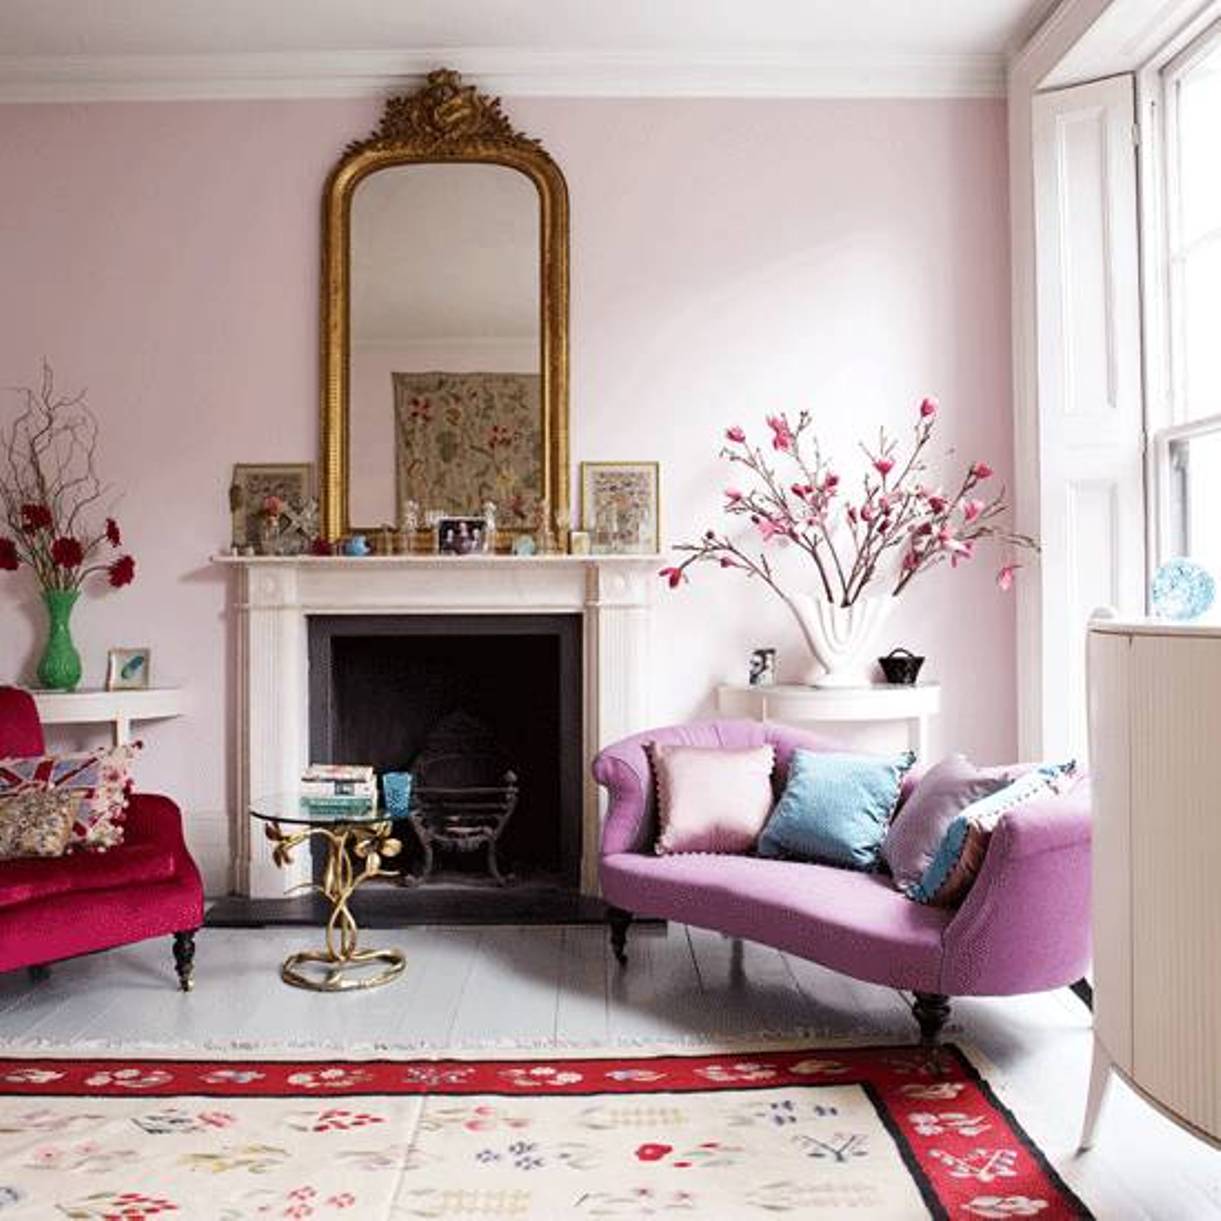 Warna tema ruang tamu dengan warna pastel pink lembut